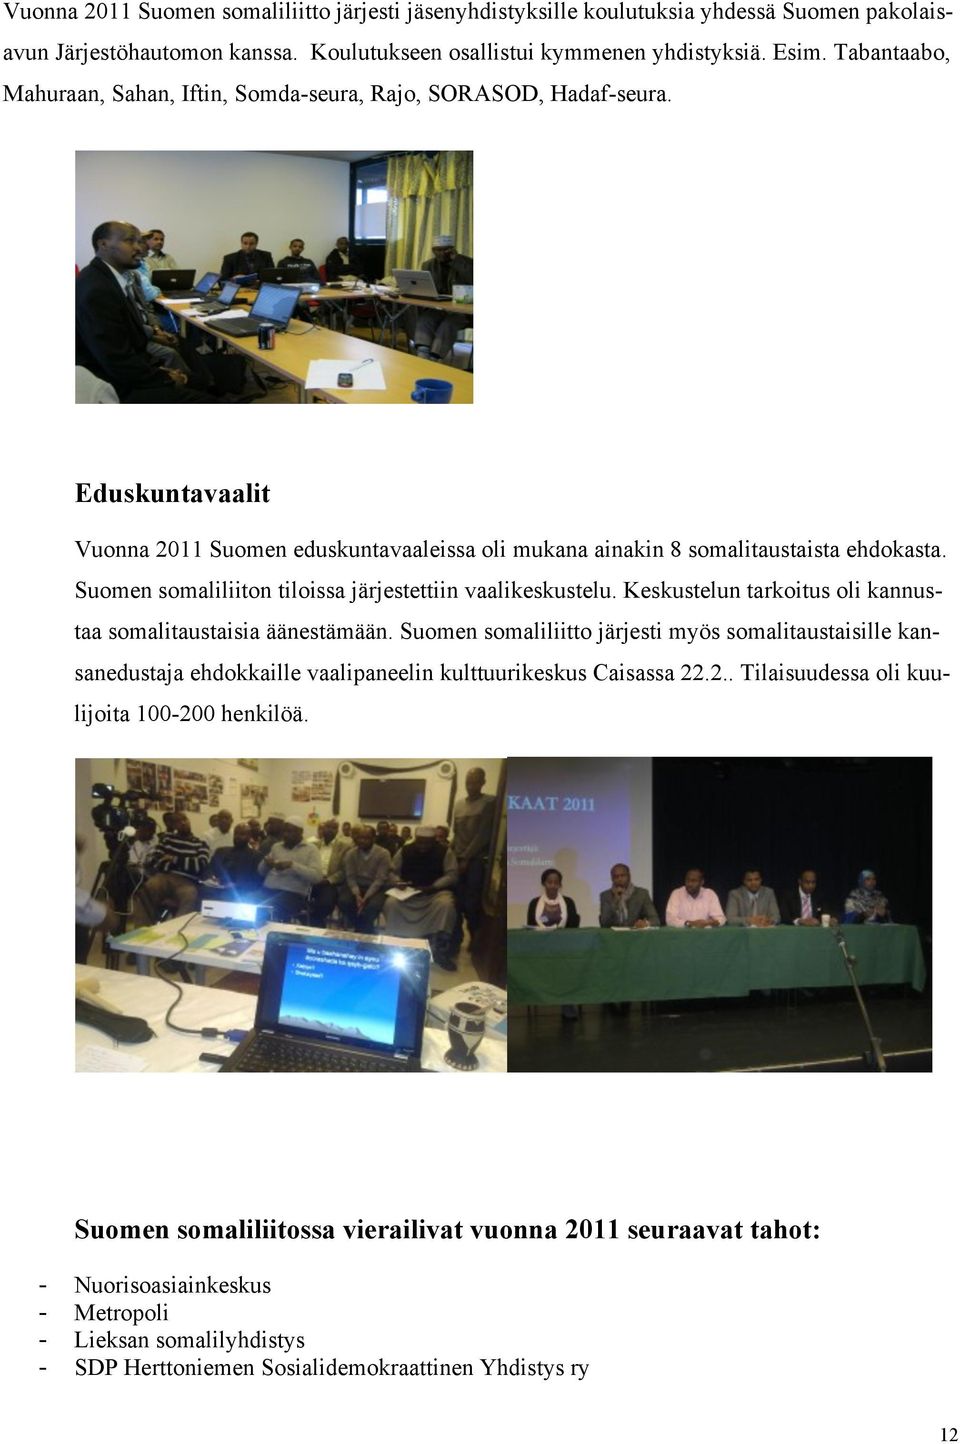 Suomen somaliliiton tiloissa järjestettiin vaalikeskustelu. Keskustelun tarkoitus oli kannustaa somalitaustaisia äänestämään.